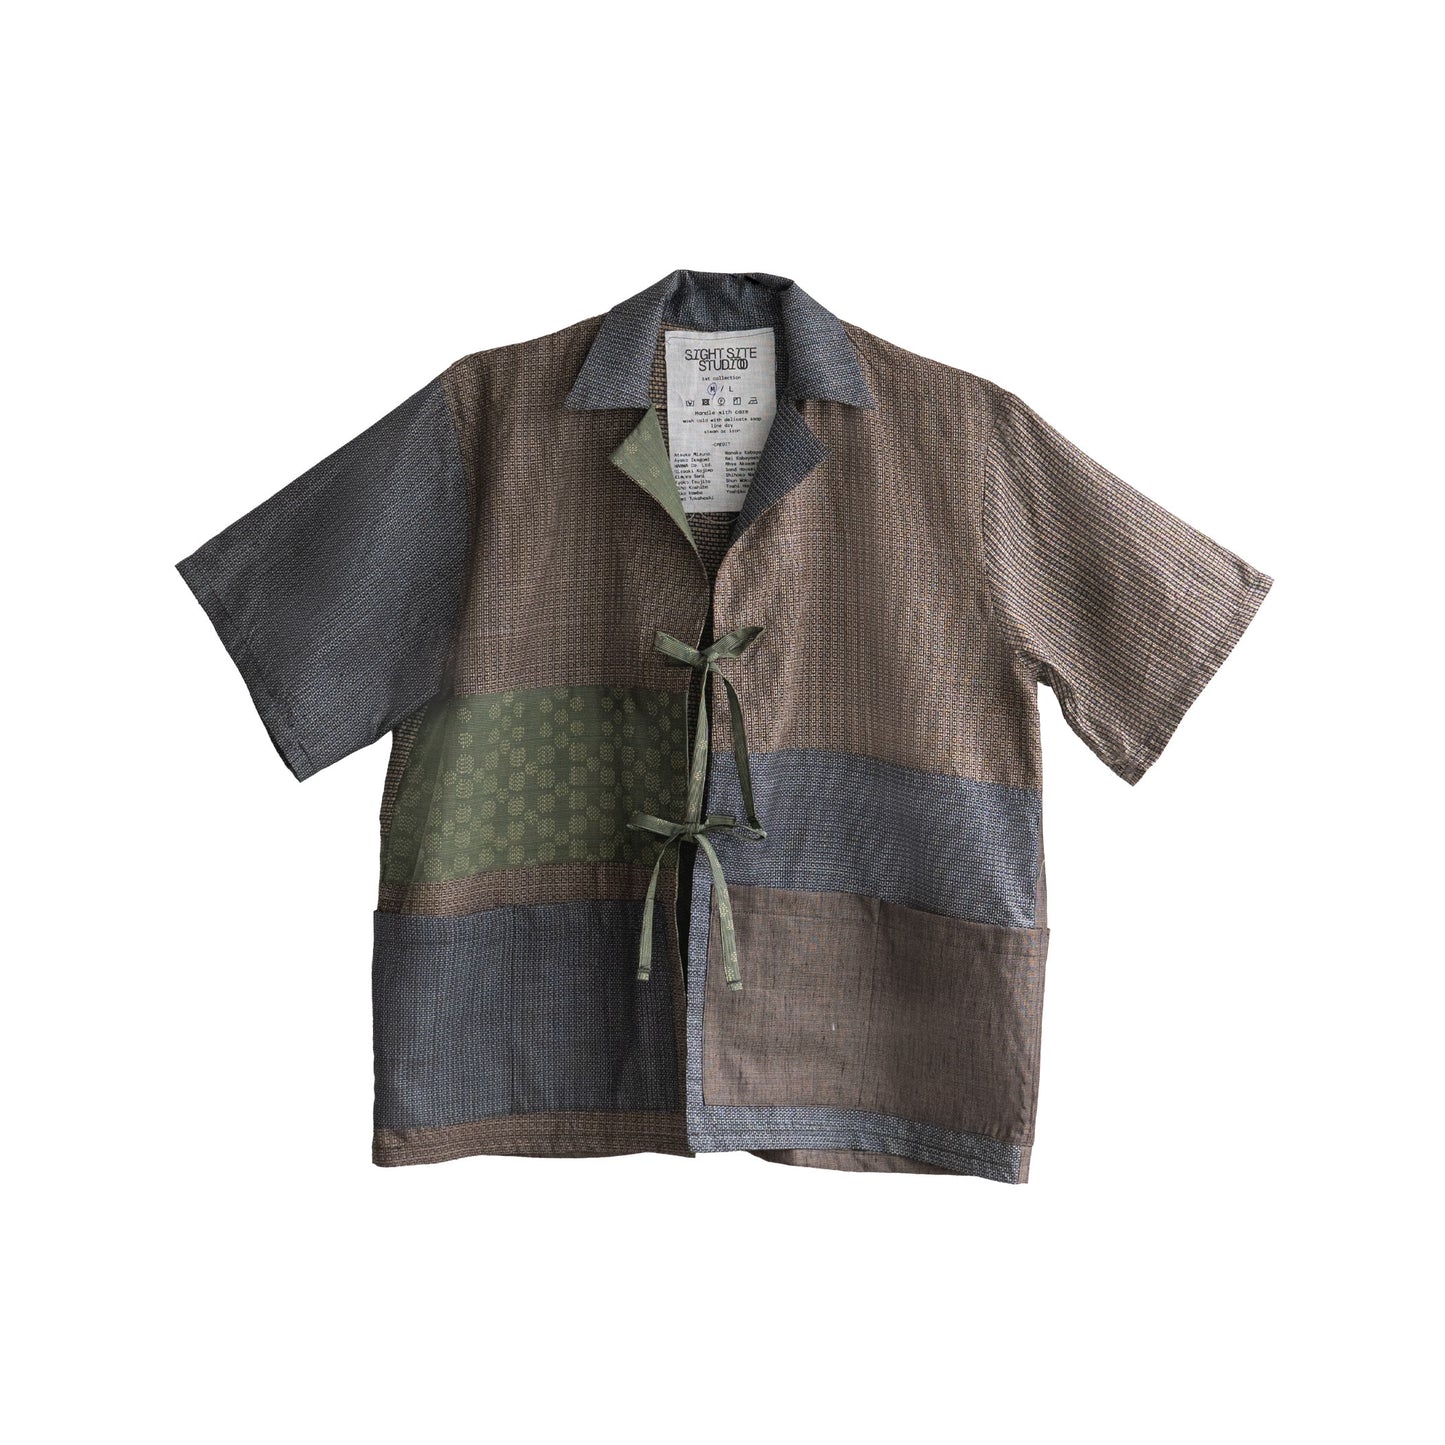 Kimono Working Shirts - Brown 02 M